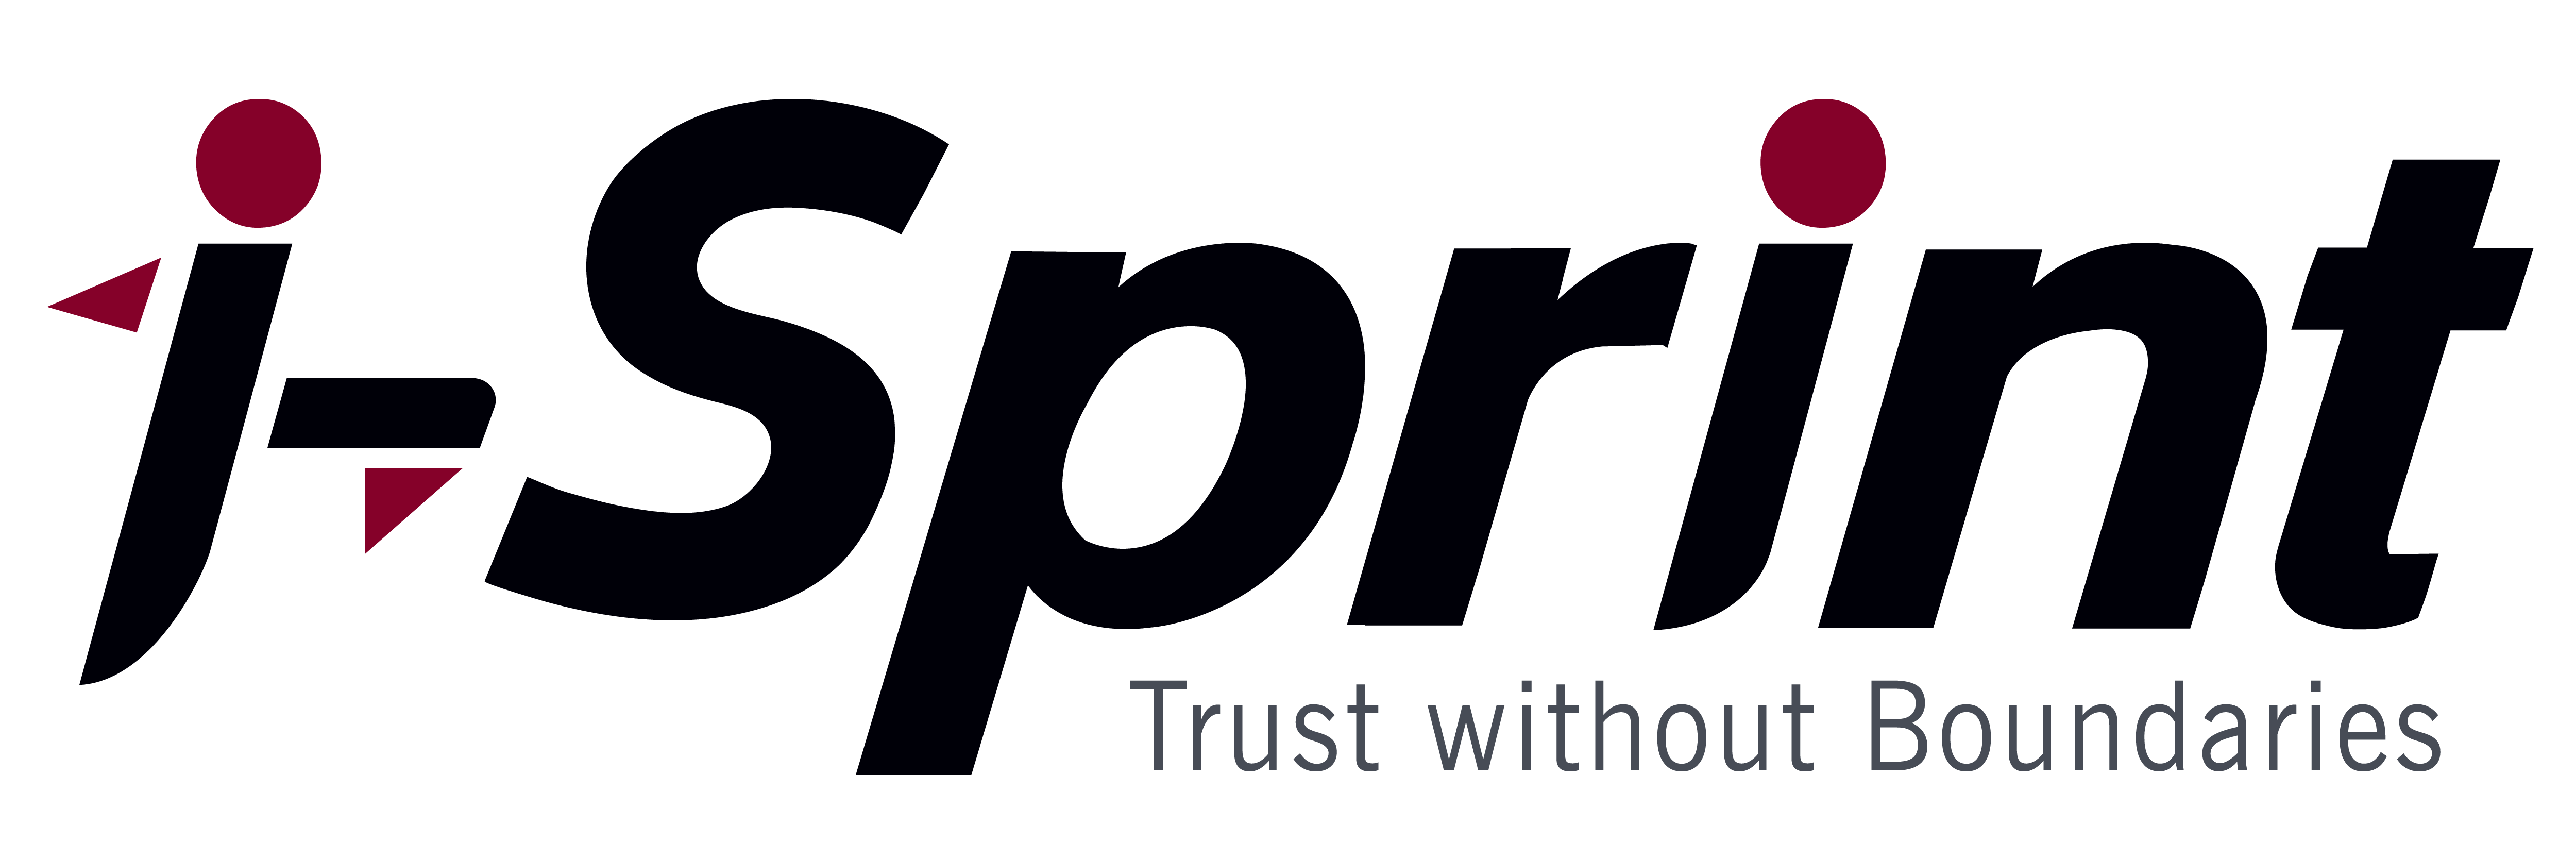 i-Sprint-Logo_Transparent Background